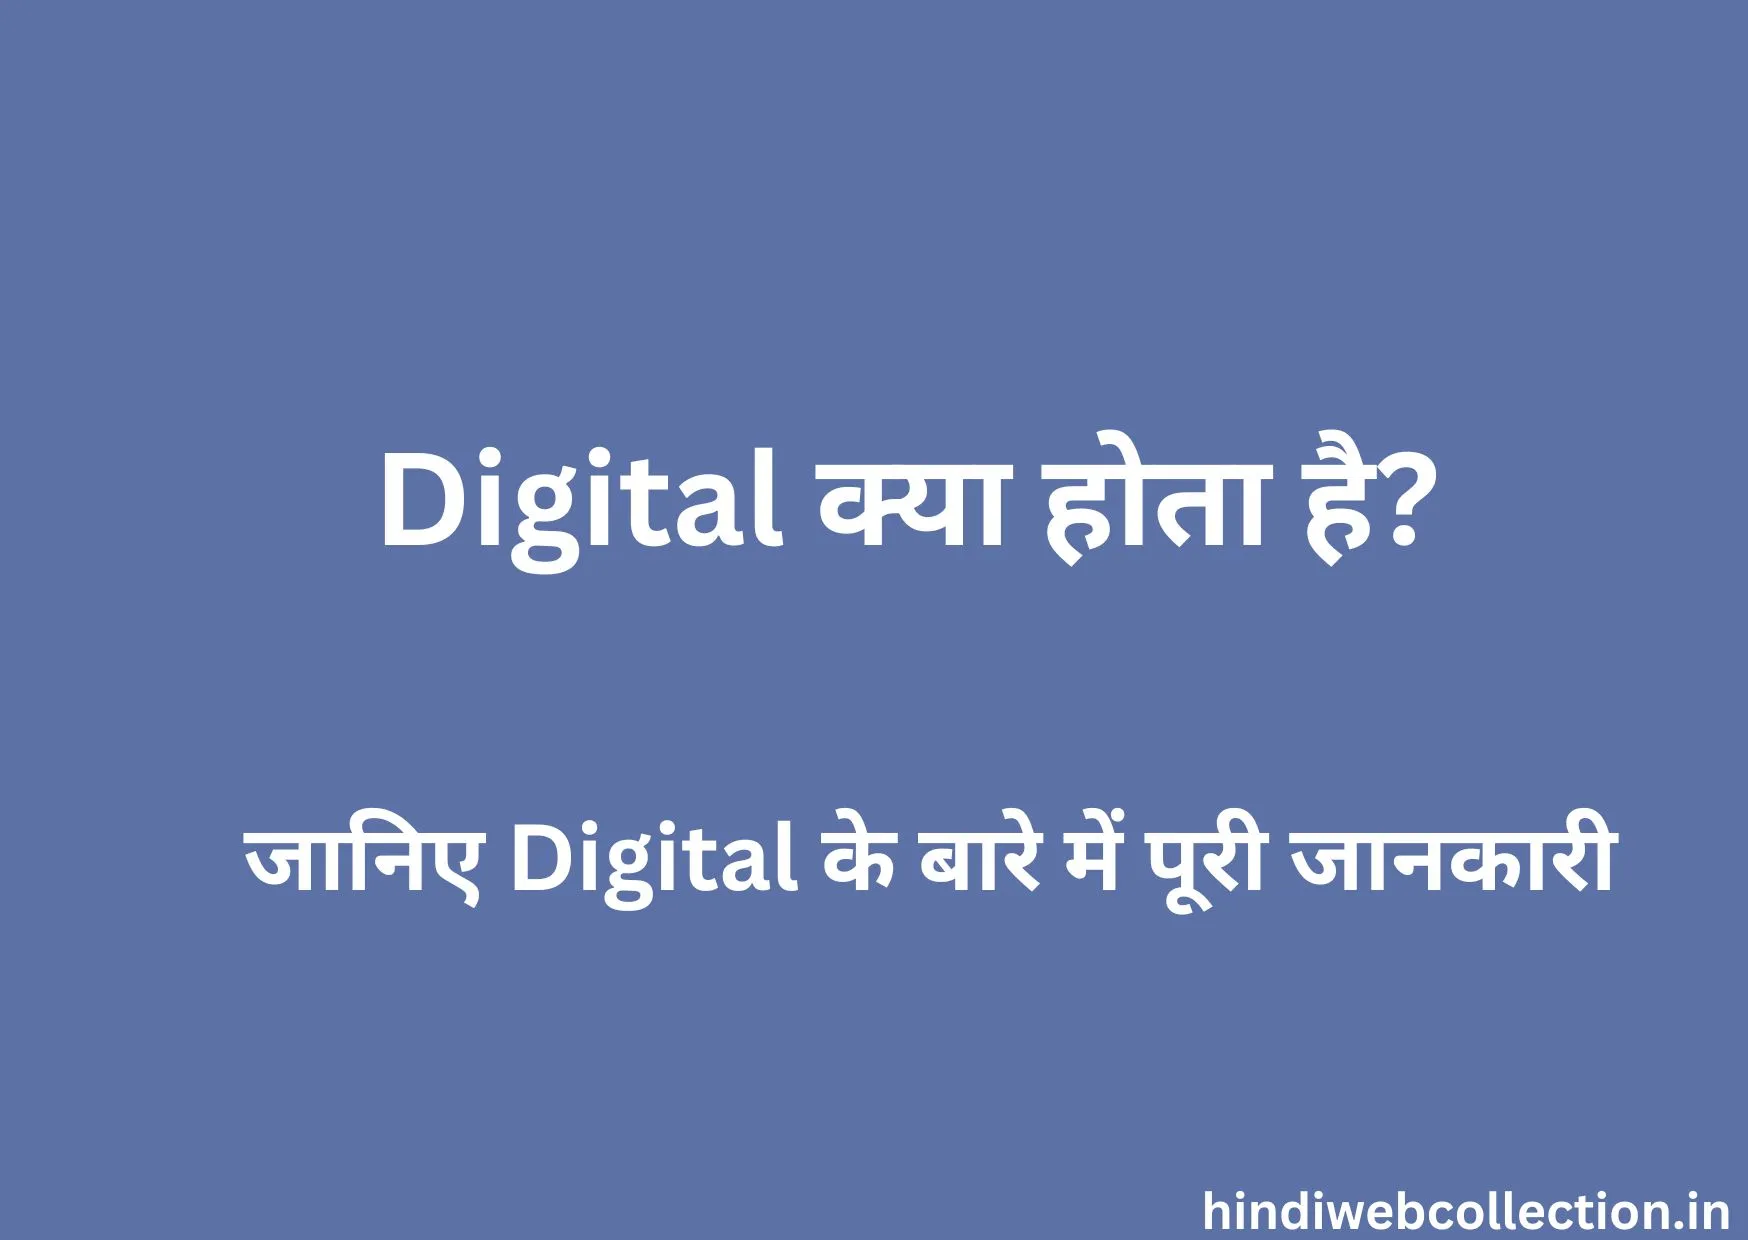 Digital Kya Hota Hai